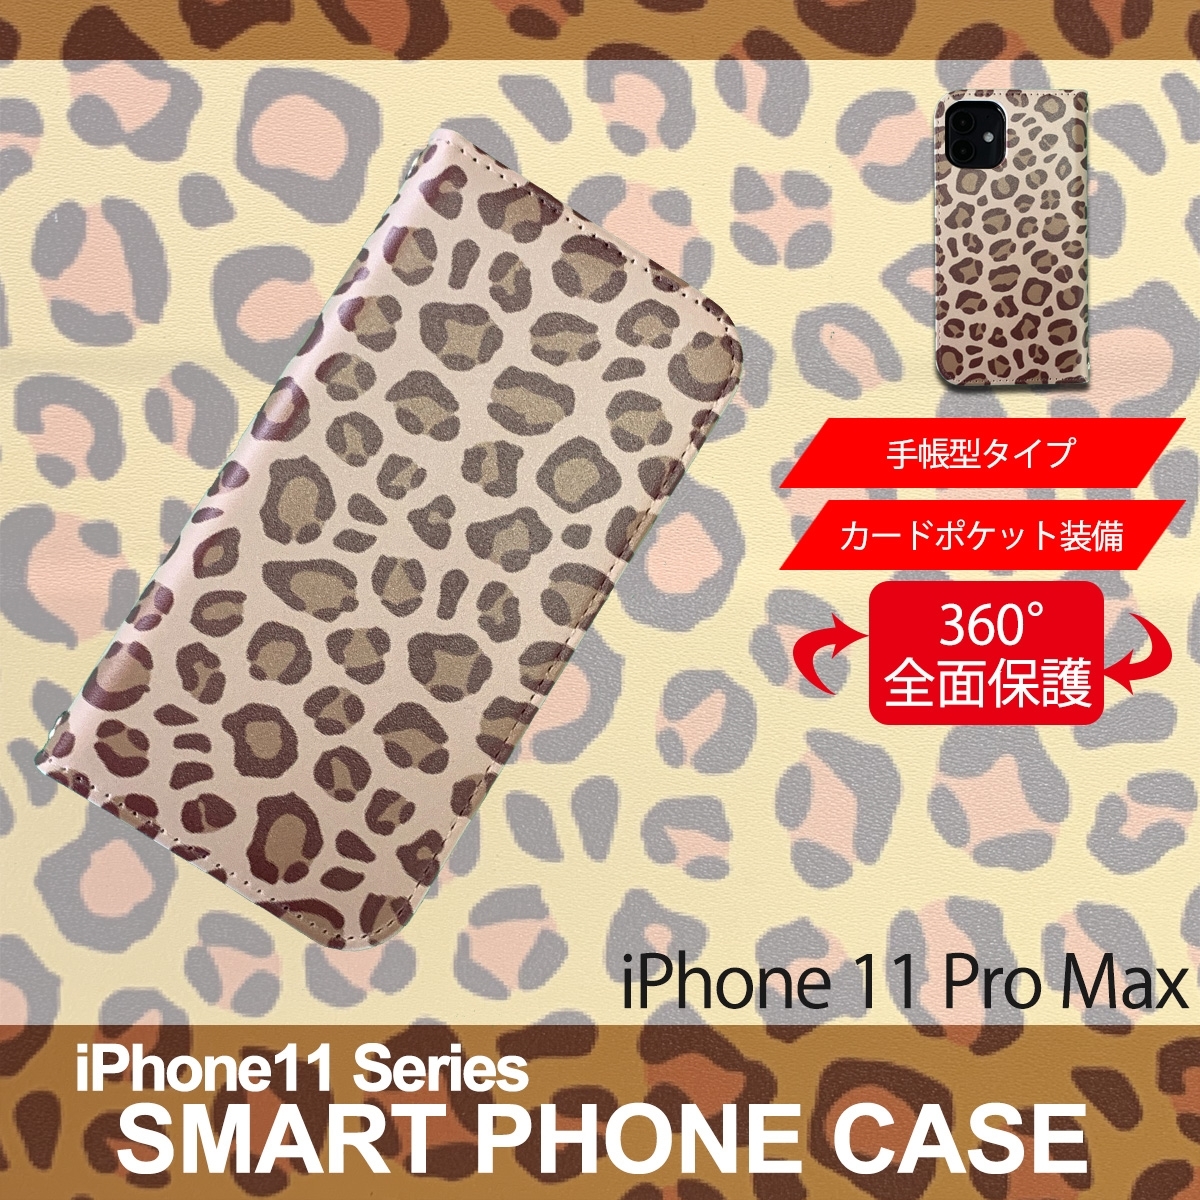 1】 iPhone11 Pro Max 手帳型 アイフォン ケース スマホカバー PVC レザー アニマル柄 ヒョウ柄 ブラウン